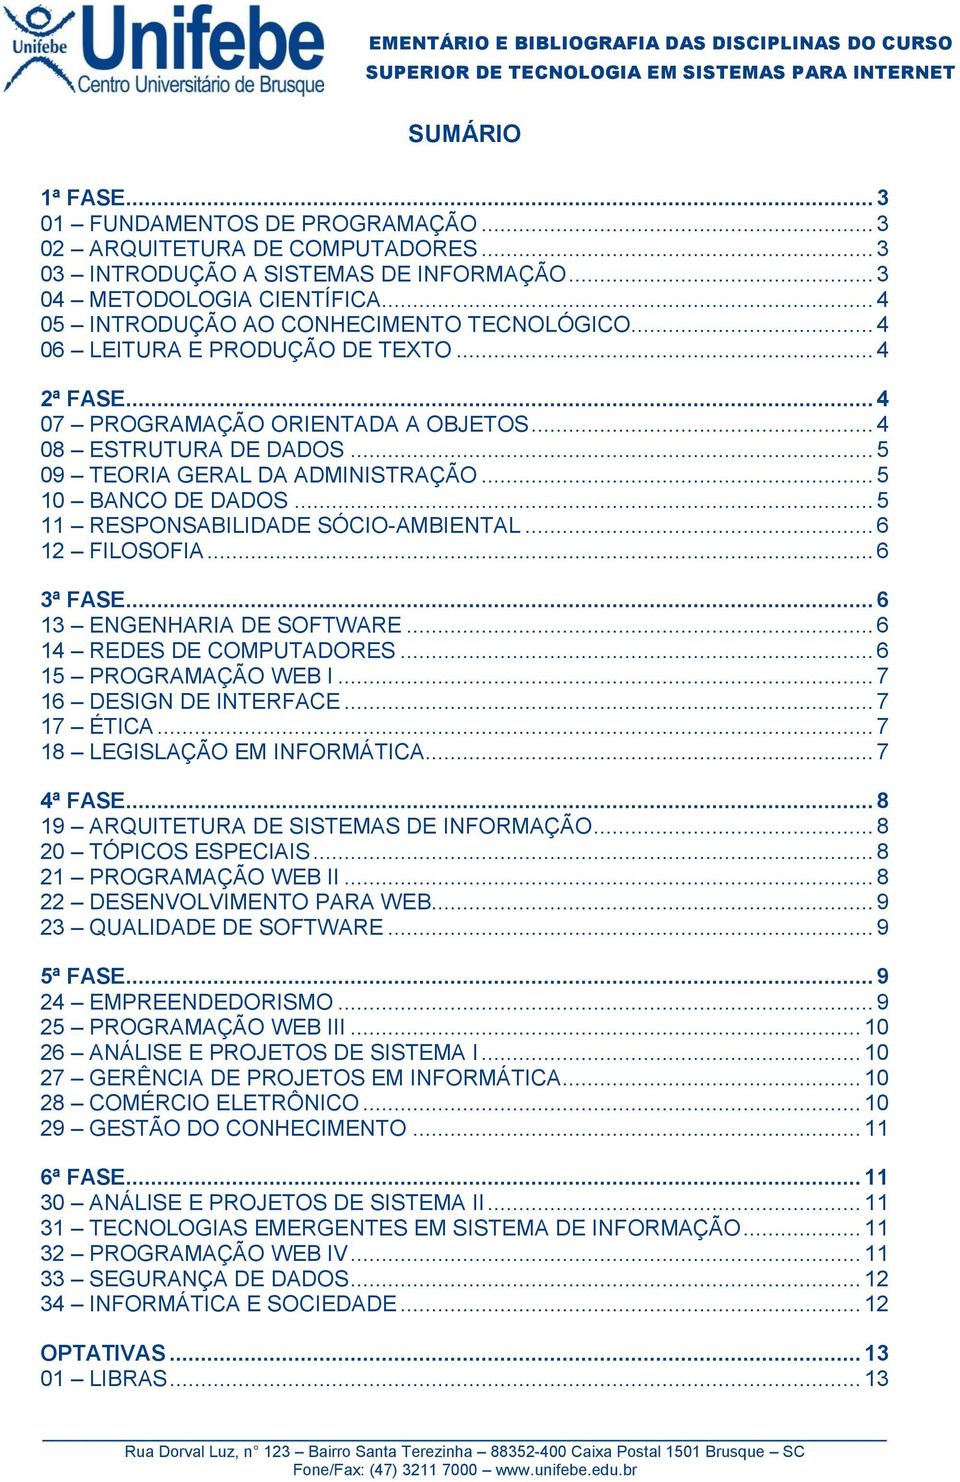 .. 5 10 BANCO DE DADOS... 5 11 RESPONSABILIDADE SÓCIO-AMBIENTAL... 6 12 FILOSOFIA... 6 3ª FASE... 6 13 ENGENHARIA DE SOFTWARE... 6 14 REDES DE COMPUTADORES... 6 15 PROGRAMAÇÃO WEB I.